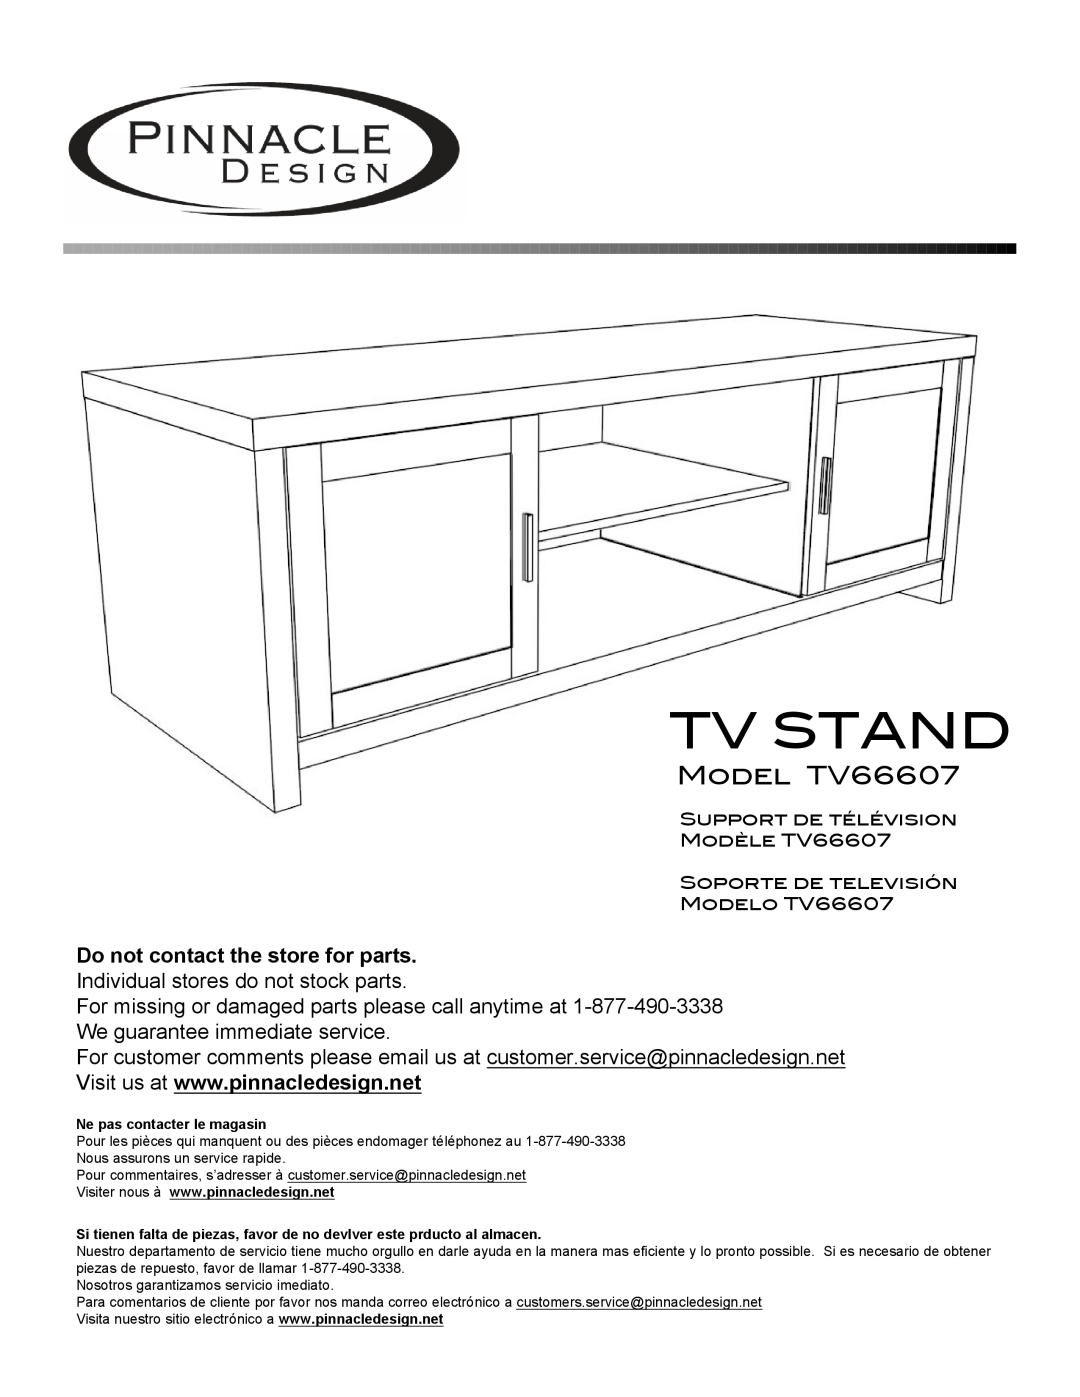 Pinnacle Design manual Model TV66607, Tv Stand 